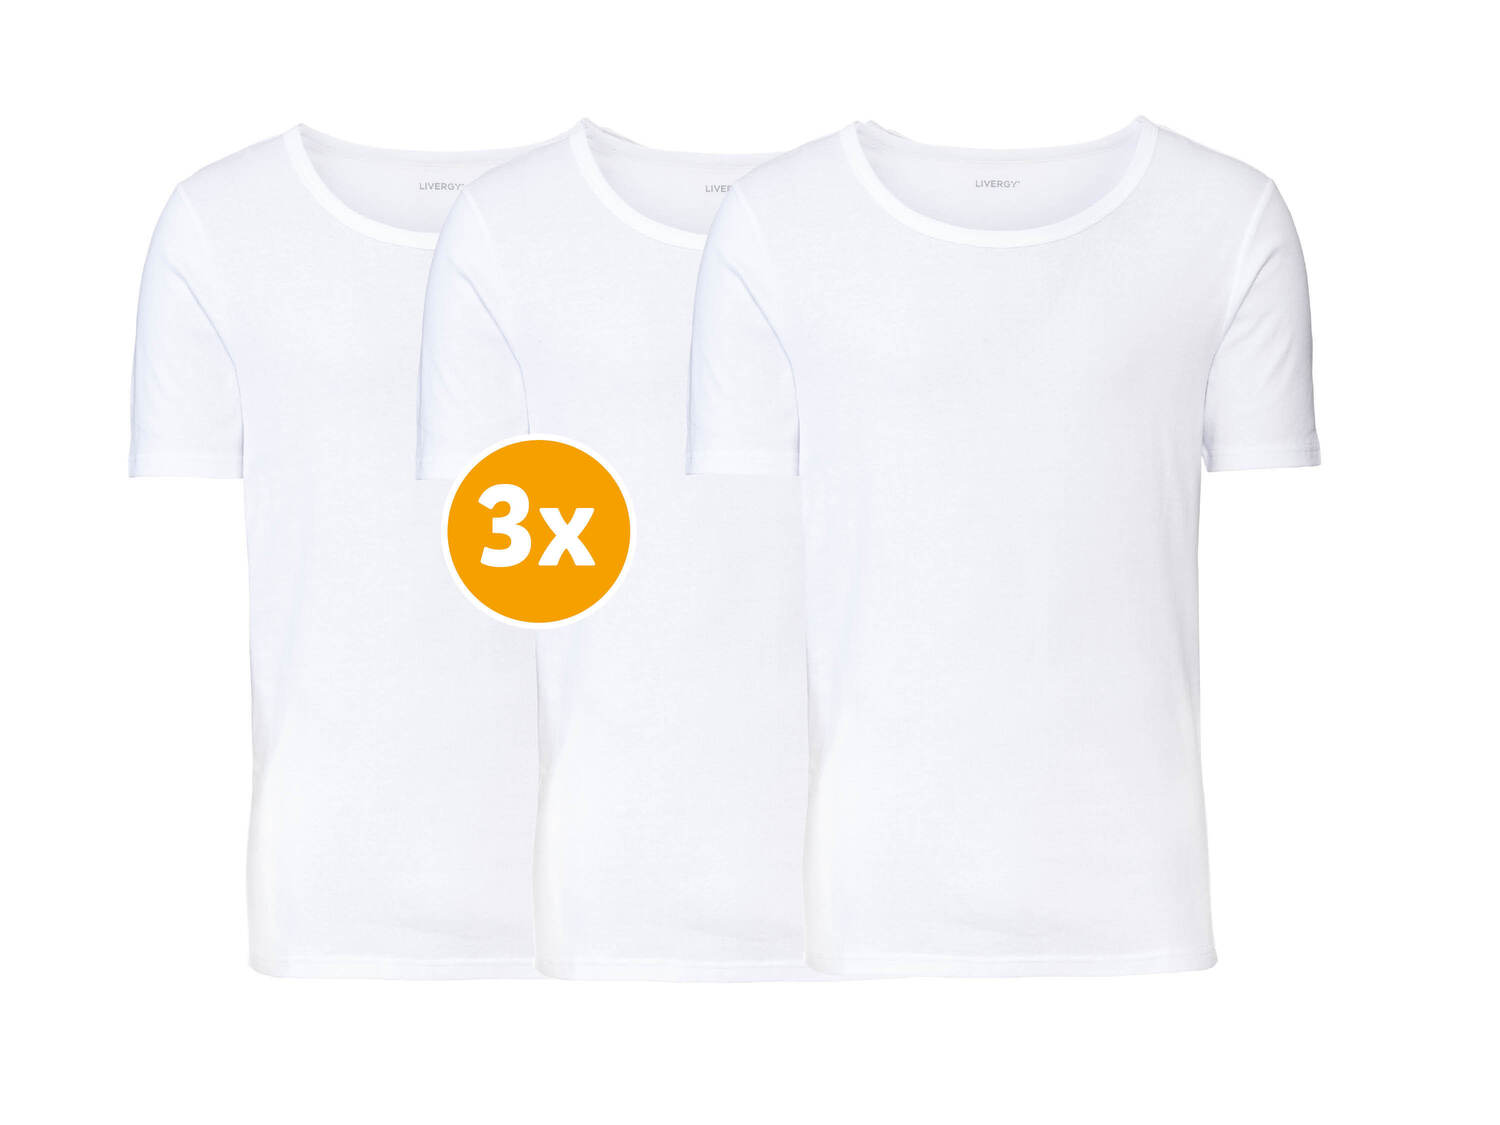 Koszulki, 3 szt.* Livergy, cena 11,99 PLN 
*Artykuł dostępny wyłącznie w 3-paku. ...